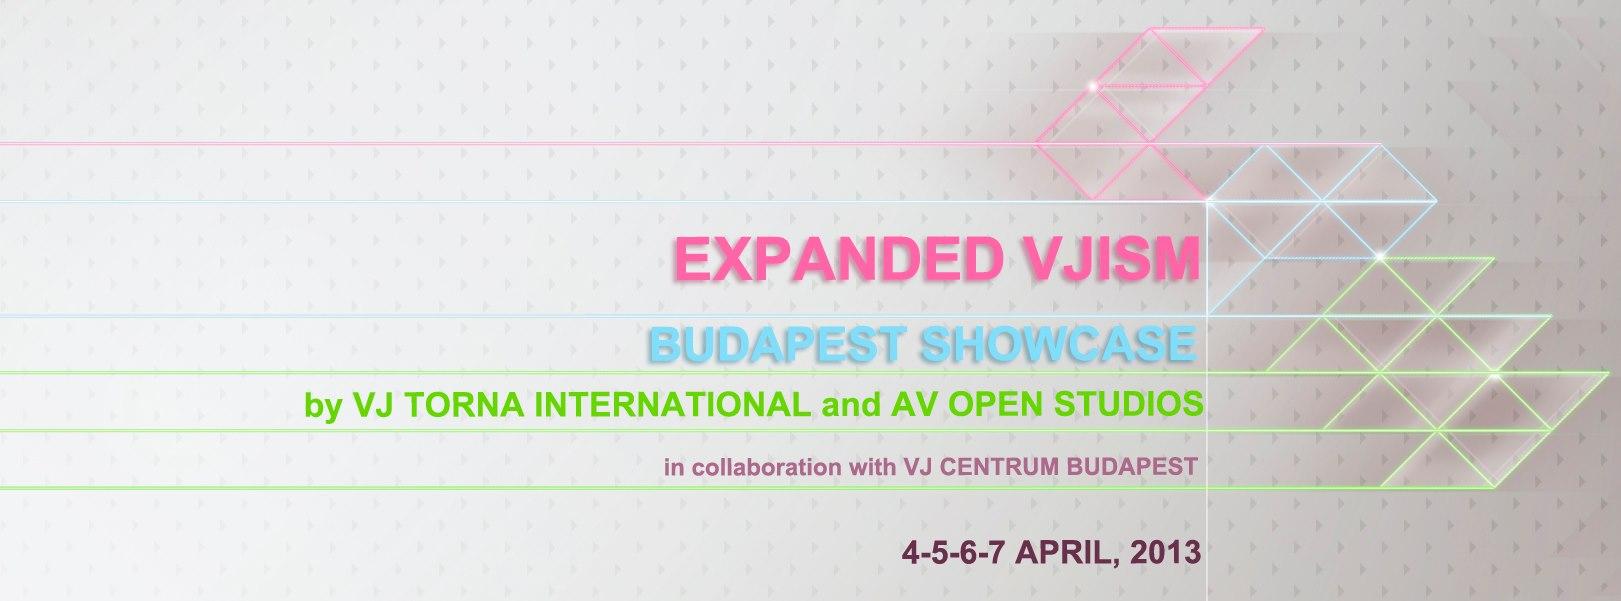 Invitation: VJ Torna International &AV Open Studios, Budapest, Until 7 April